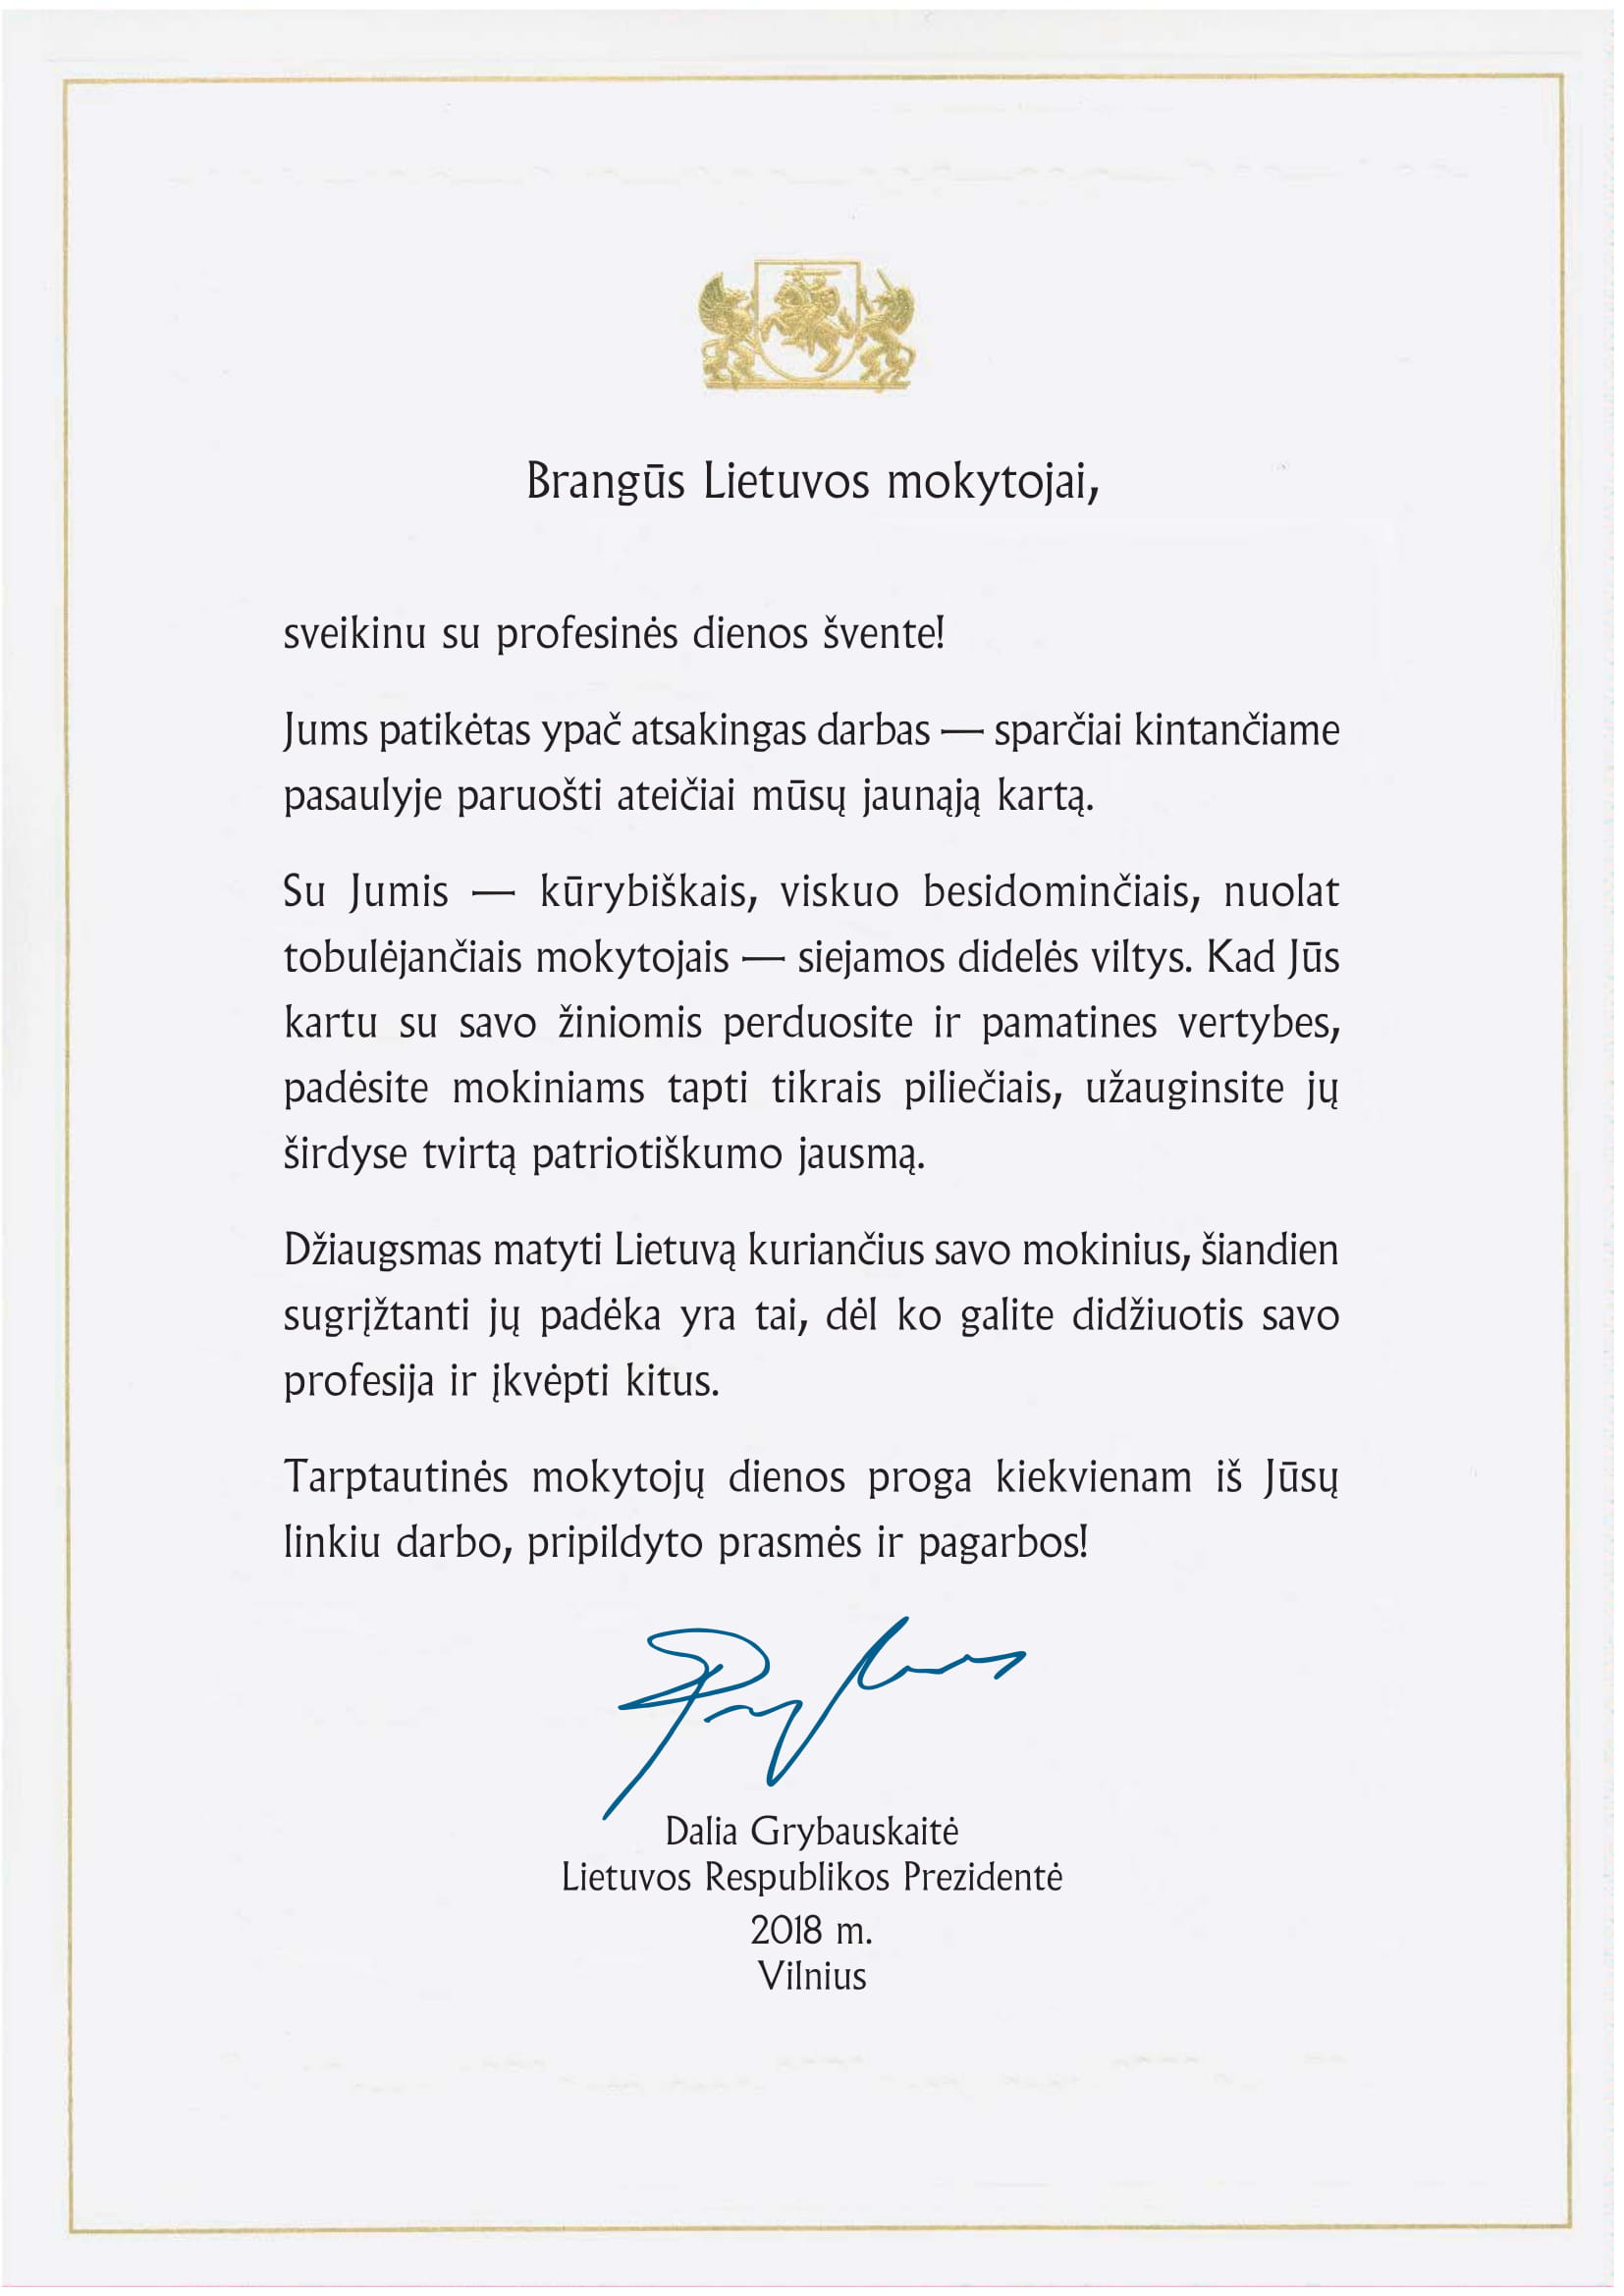 2018-10-05 Lietuvos Respublikos Prezidentės Dalios Grybauskaitės sveikinimas Tarptautinės mokytojų dienos proga-1.jpg